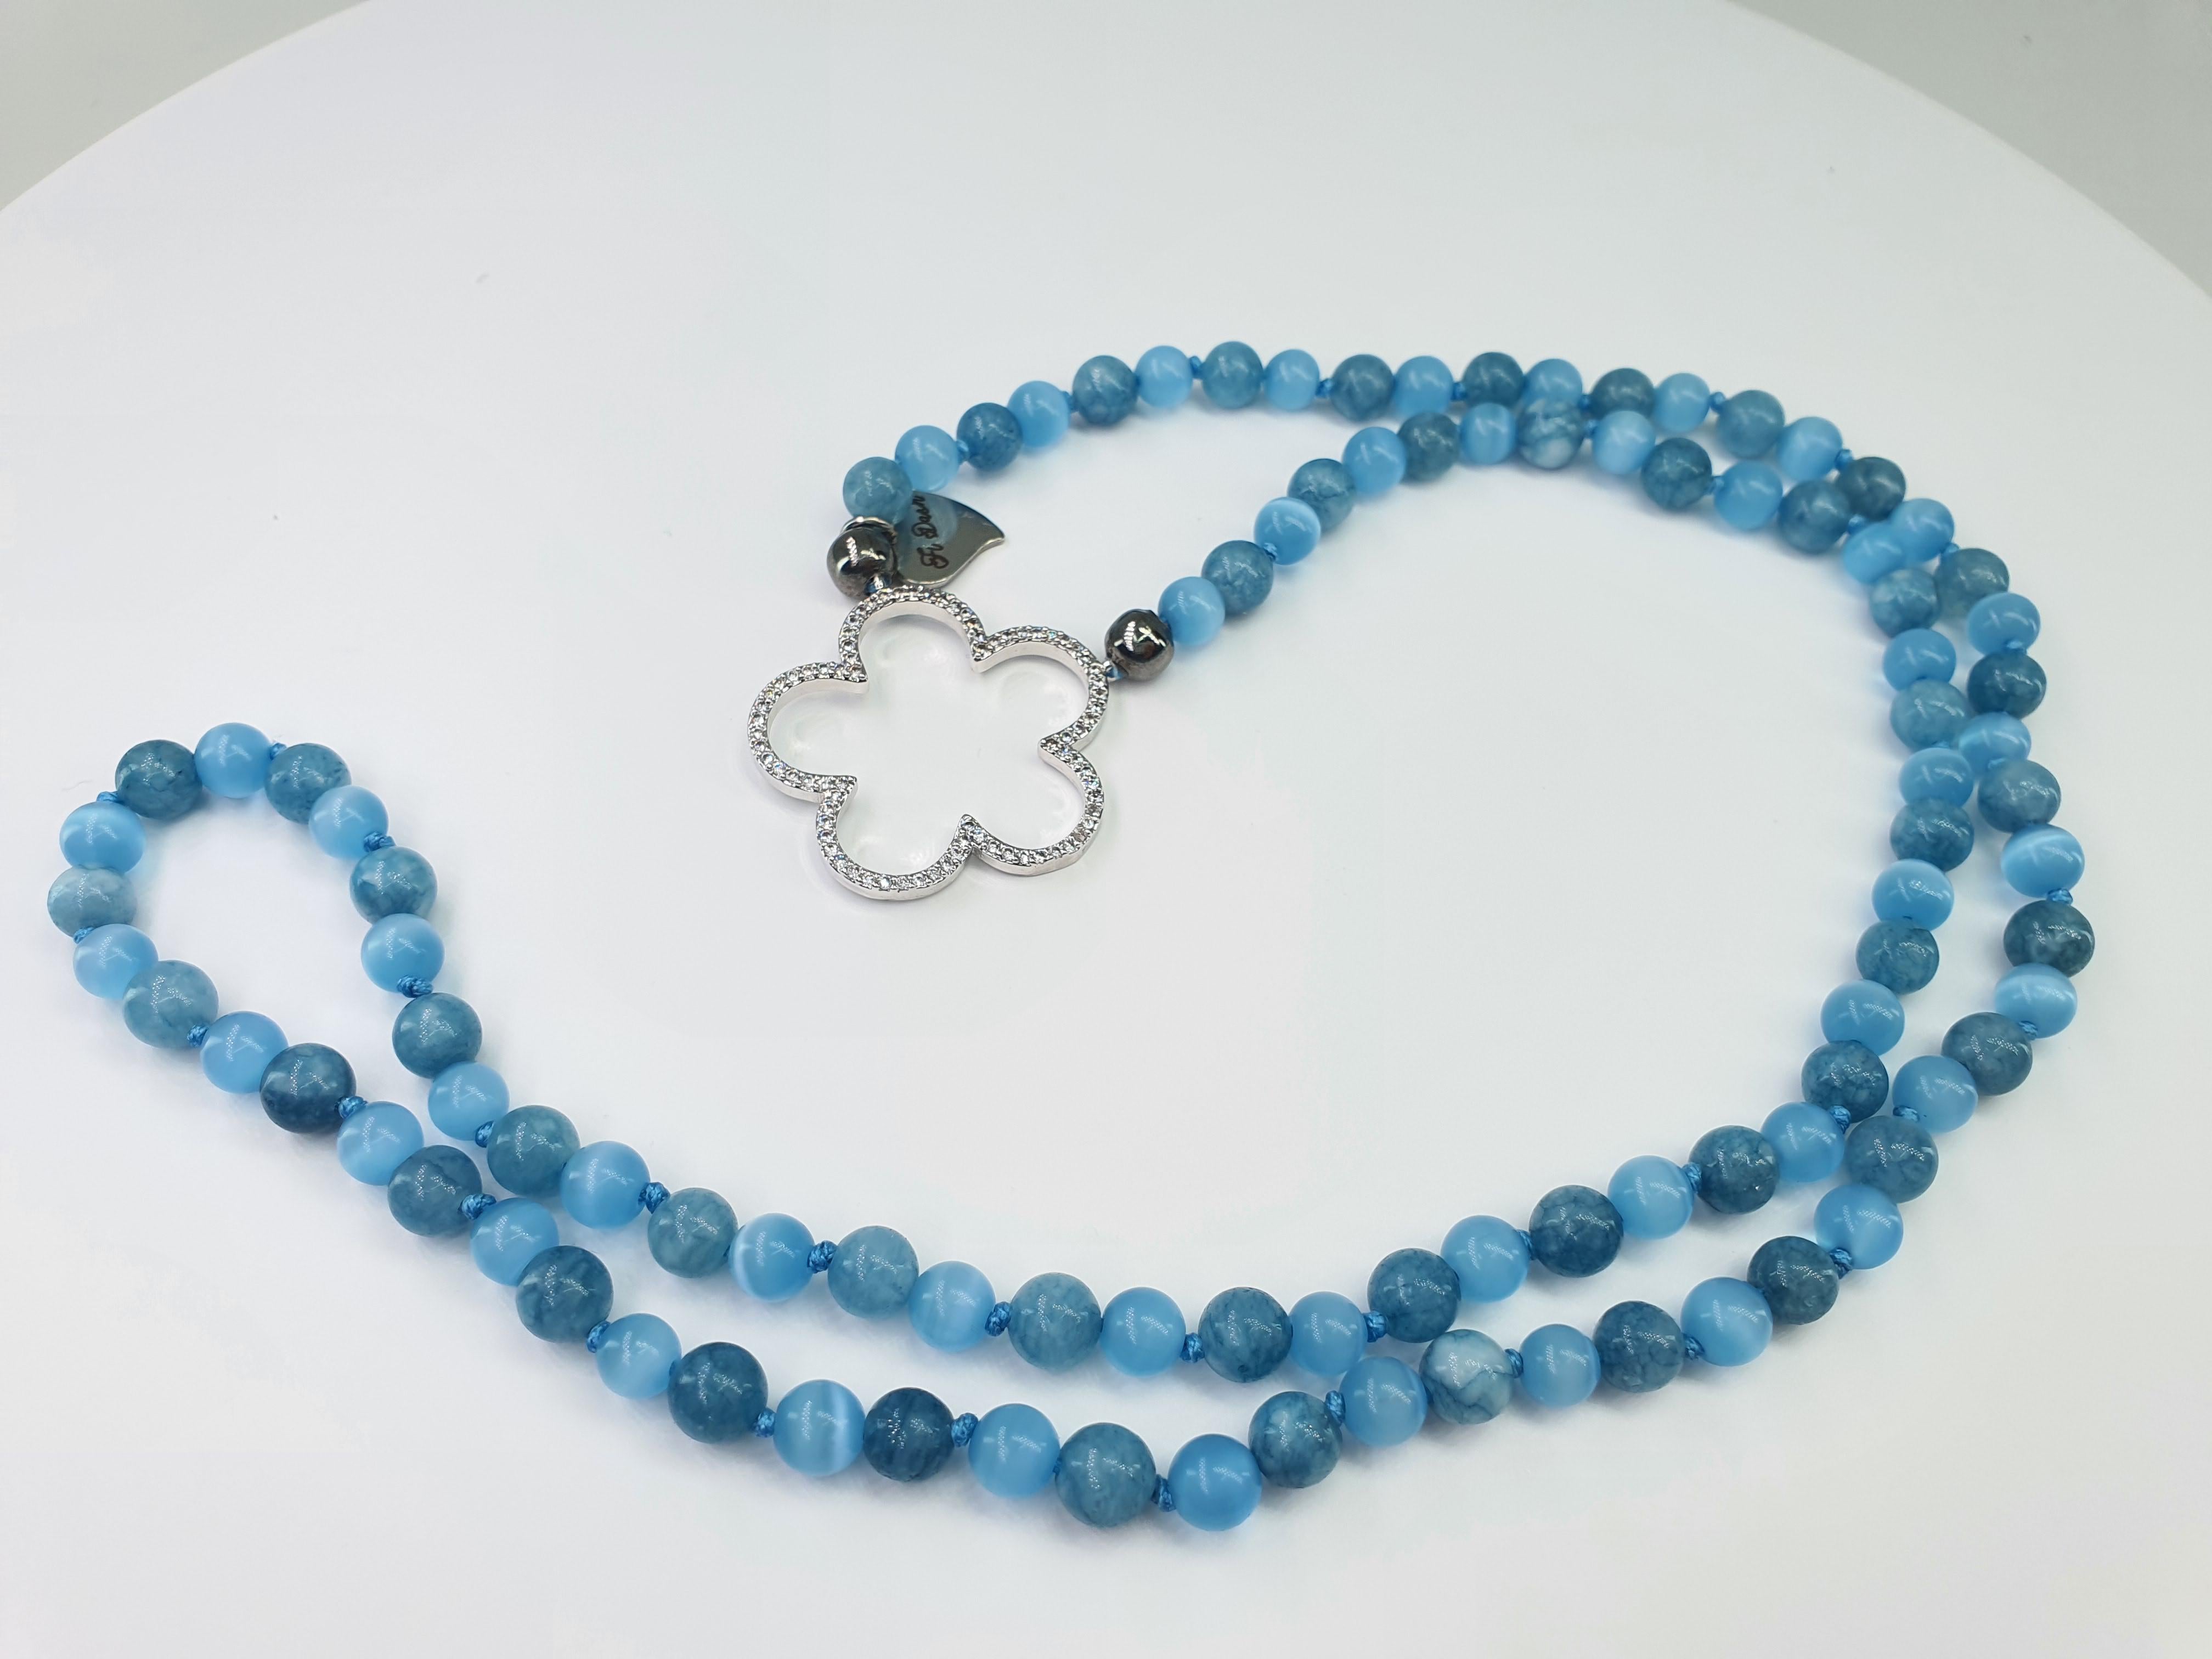 Diese wunderschöne aquamarinfarbene und hellblaue Sonnenbrillen-Halskette mit Blume kann als Halskette oder als Anhänger für eine Sonnenbrille verwendet werden, aber auch als Accessoire für eine Handtasche. Diese Halskette wird von unseren